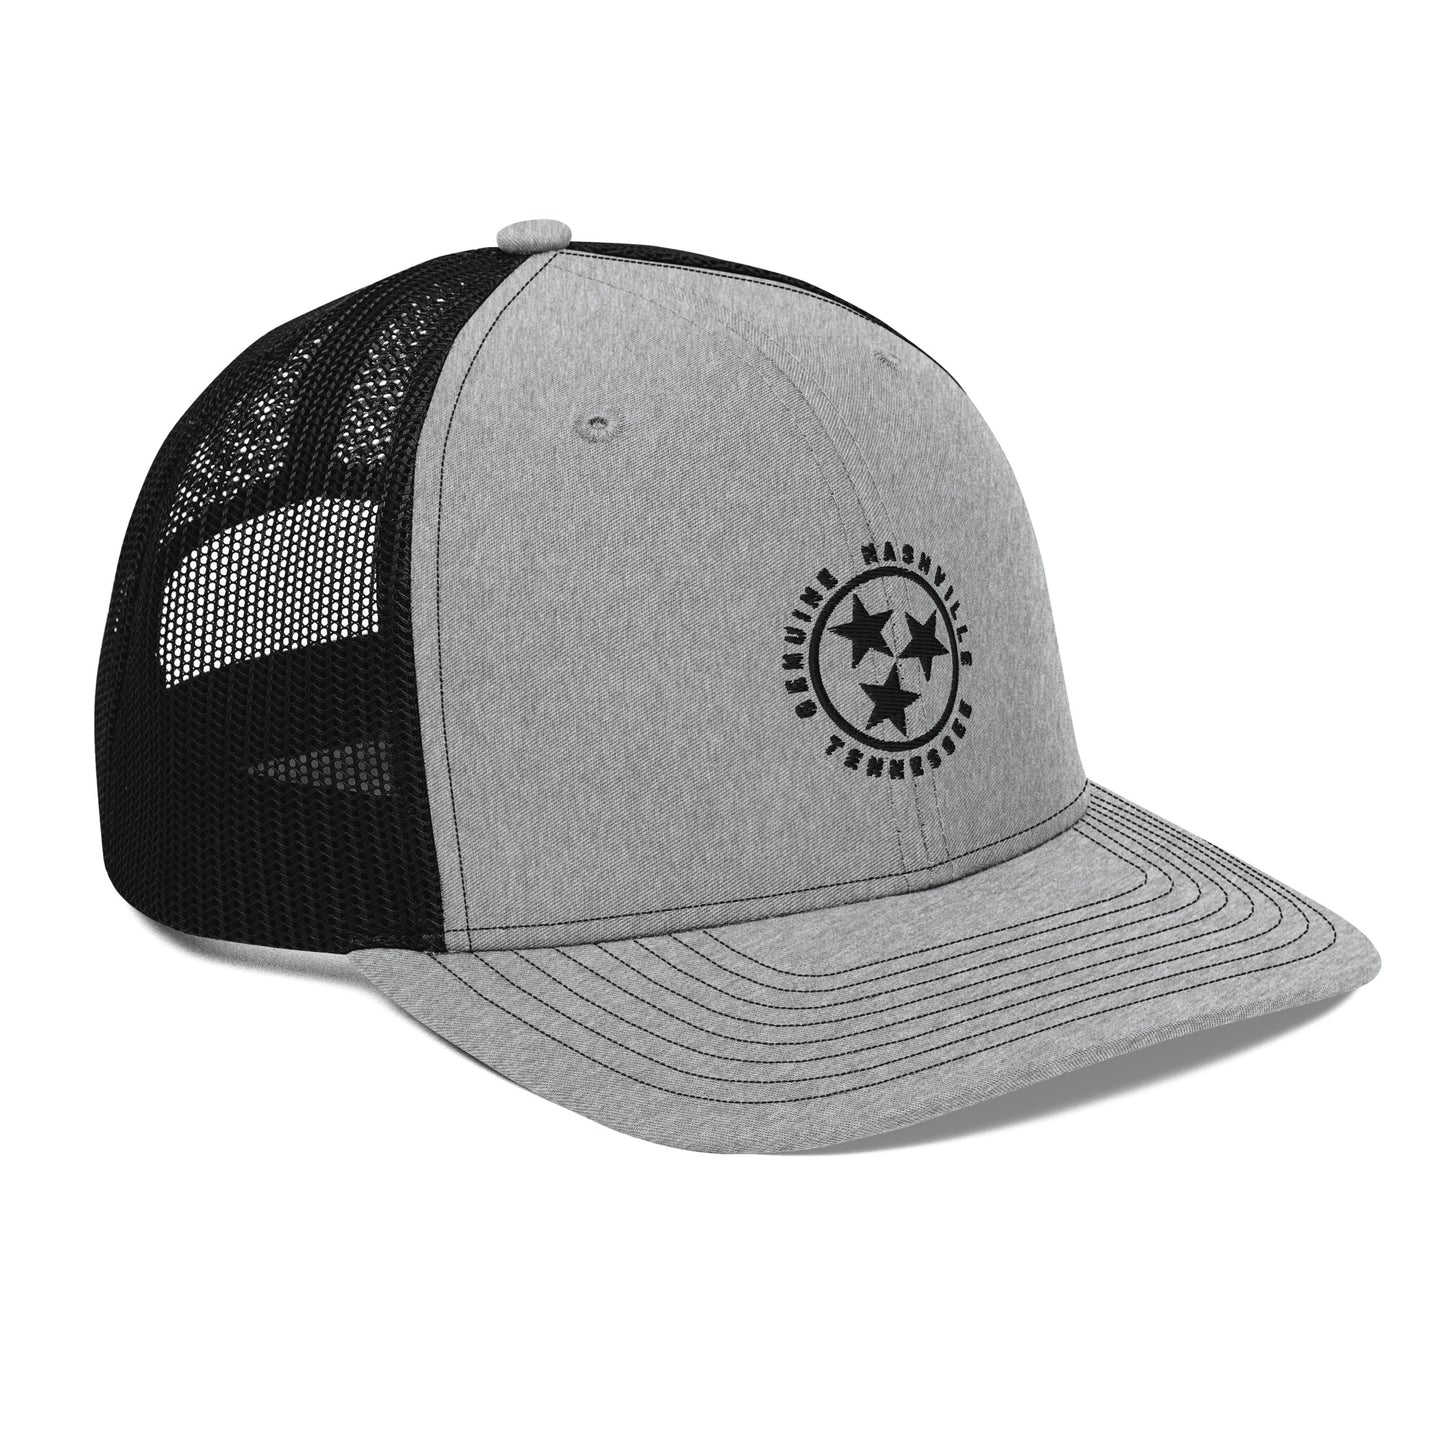 Genuine Nashville Trucker Hat